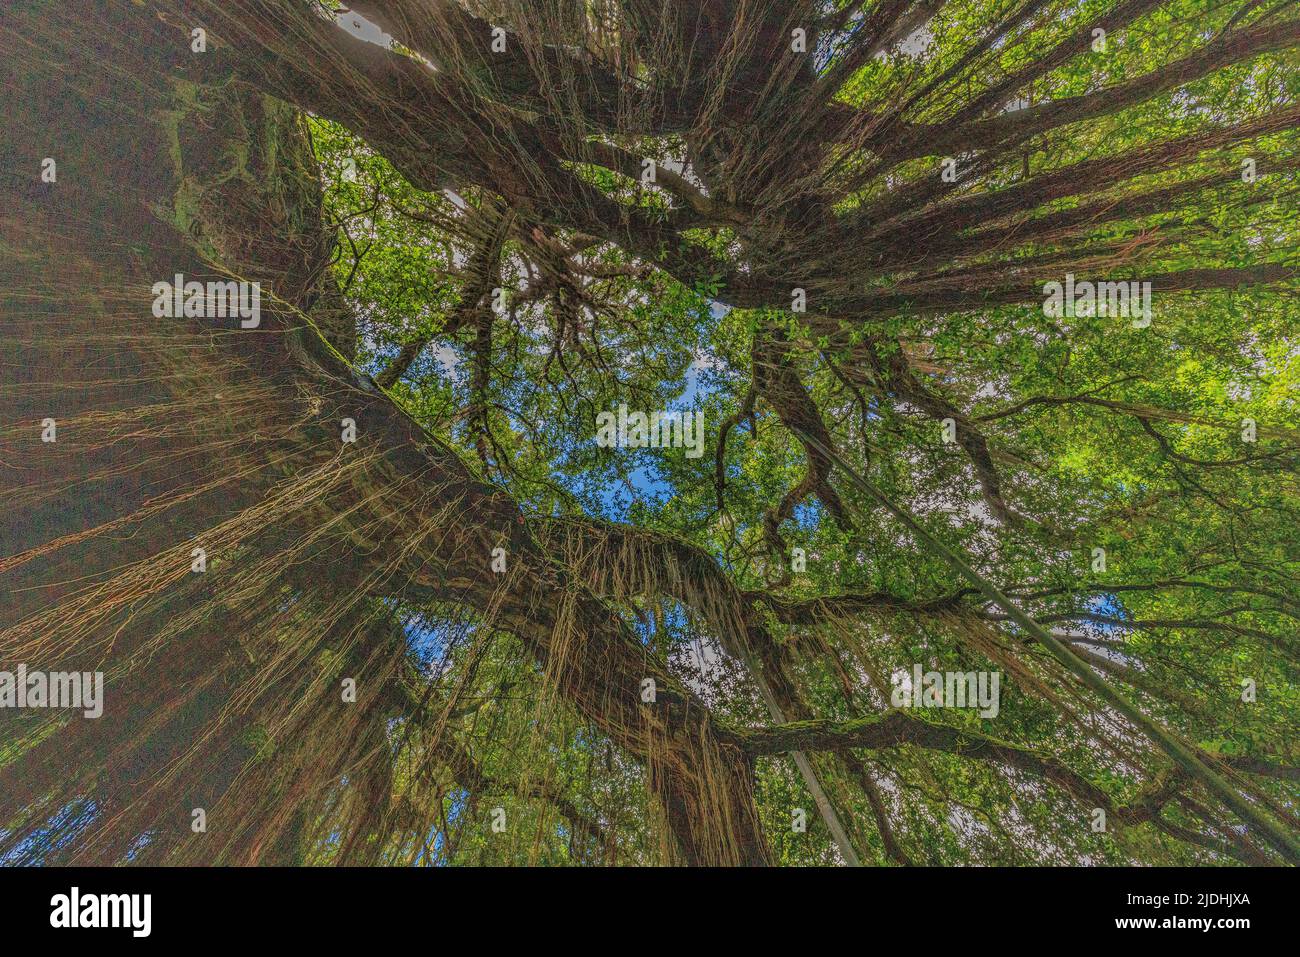 photo en regardant le ciel vert d'un arbre banyan ficus avec les racines de prop qui s'étendent jusqu'au sol dans les jardins de terra nostra furnas açores Banque D'Images